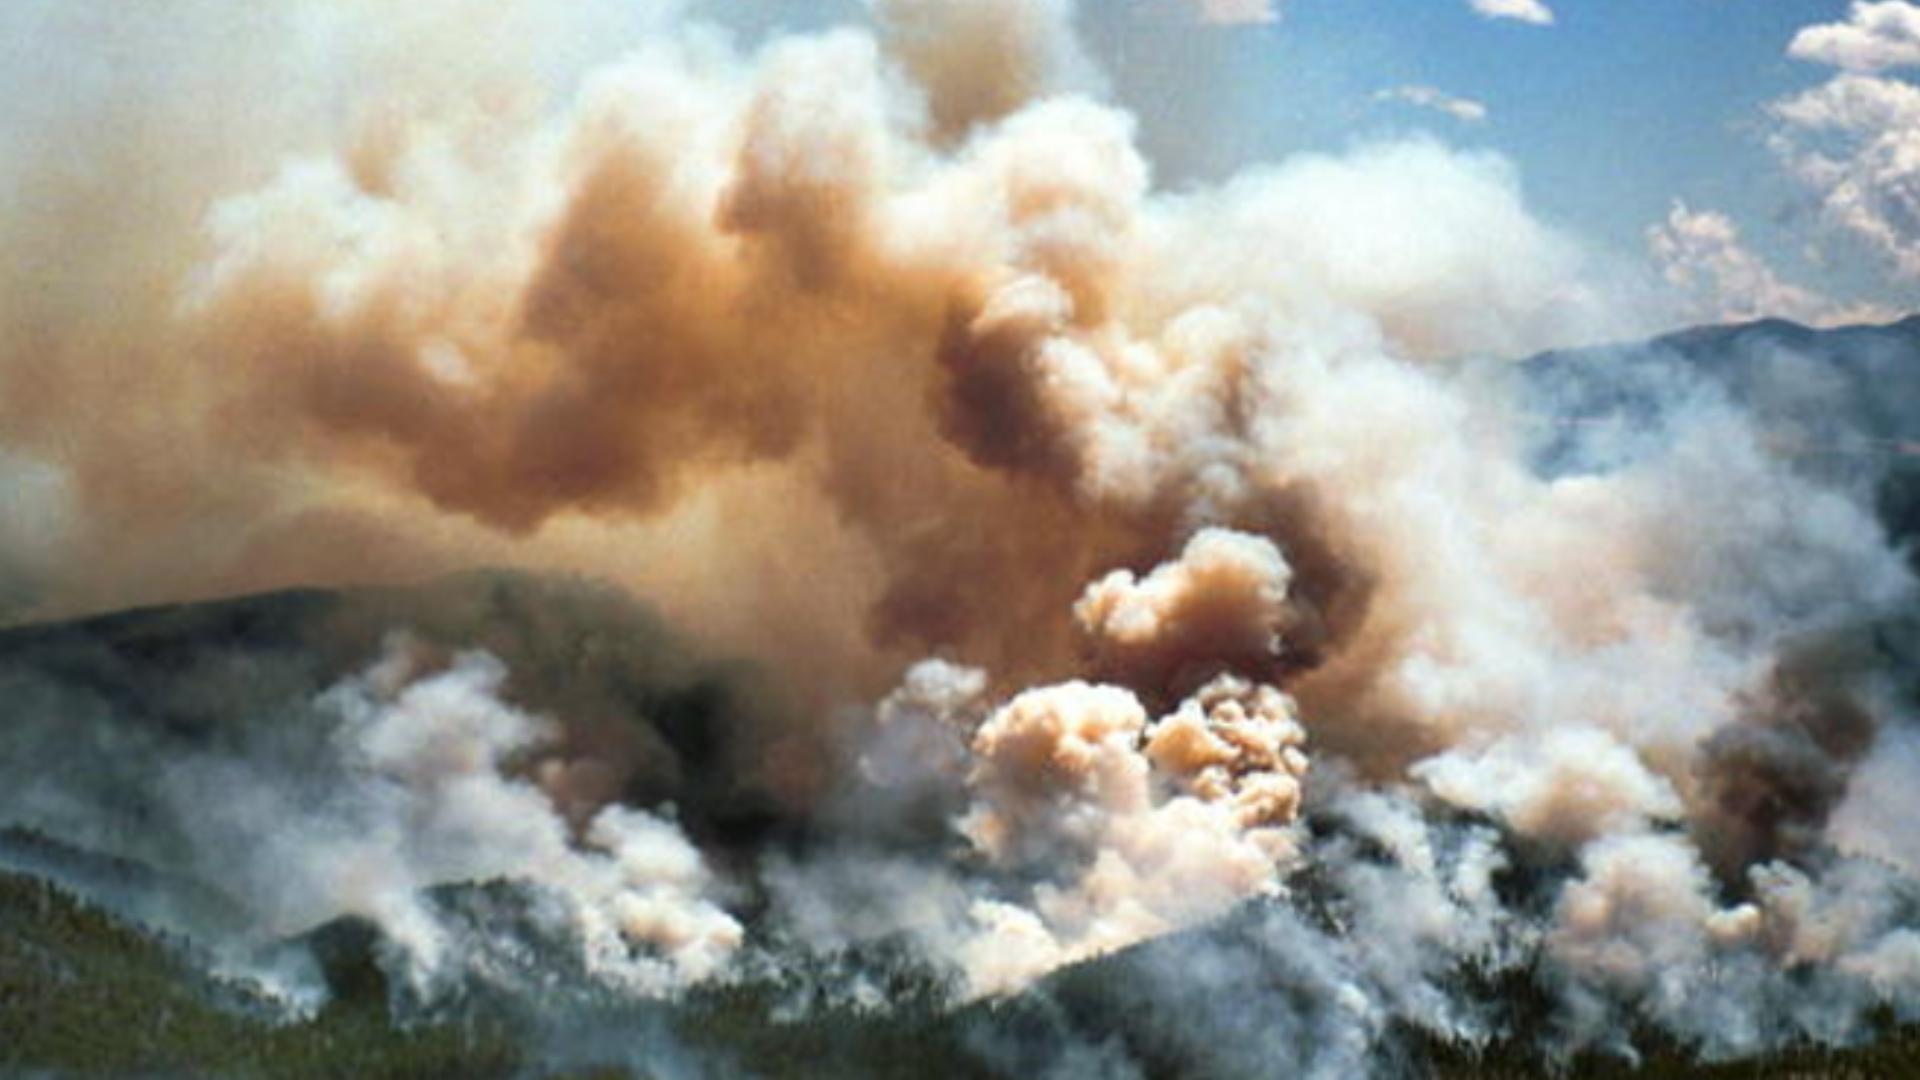 “从森林到水龙头”项目的启动是海曼和布法罗溪野火破坏性影响的结果。图片提供:上南普拉特联盟。